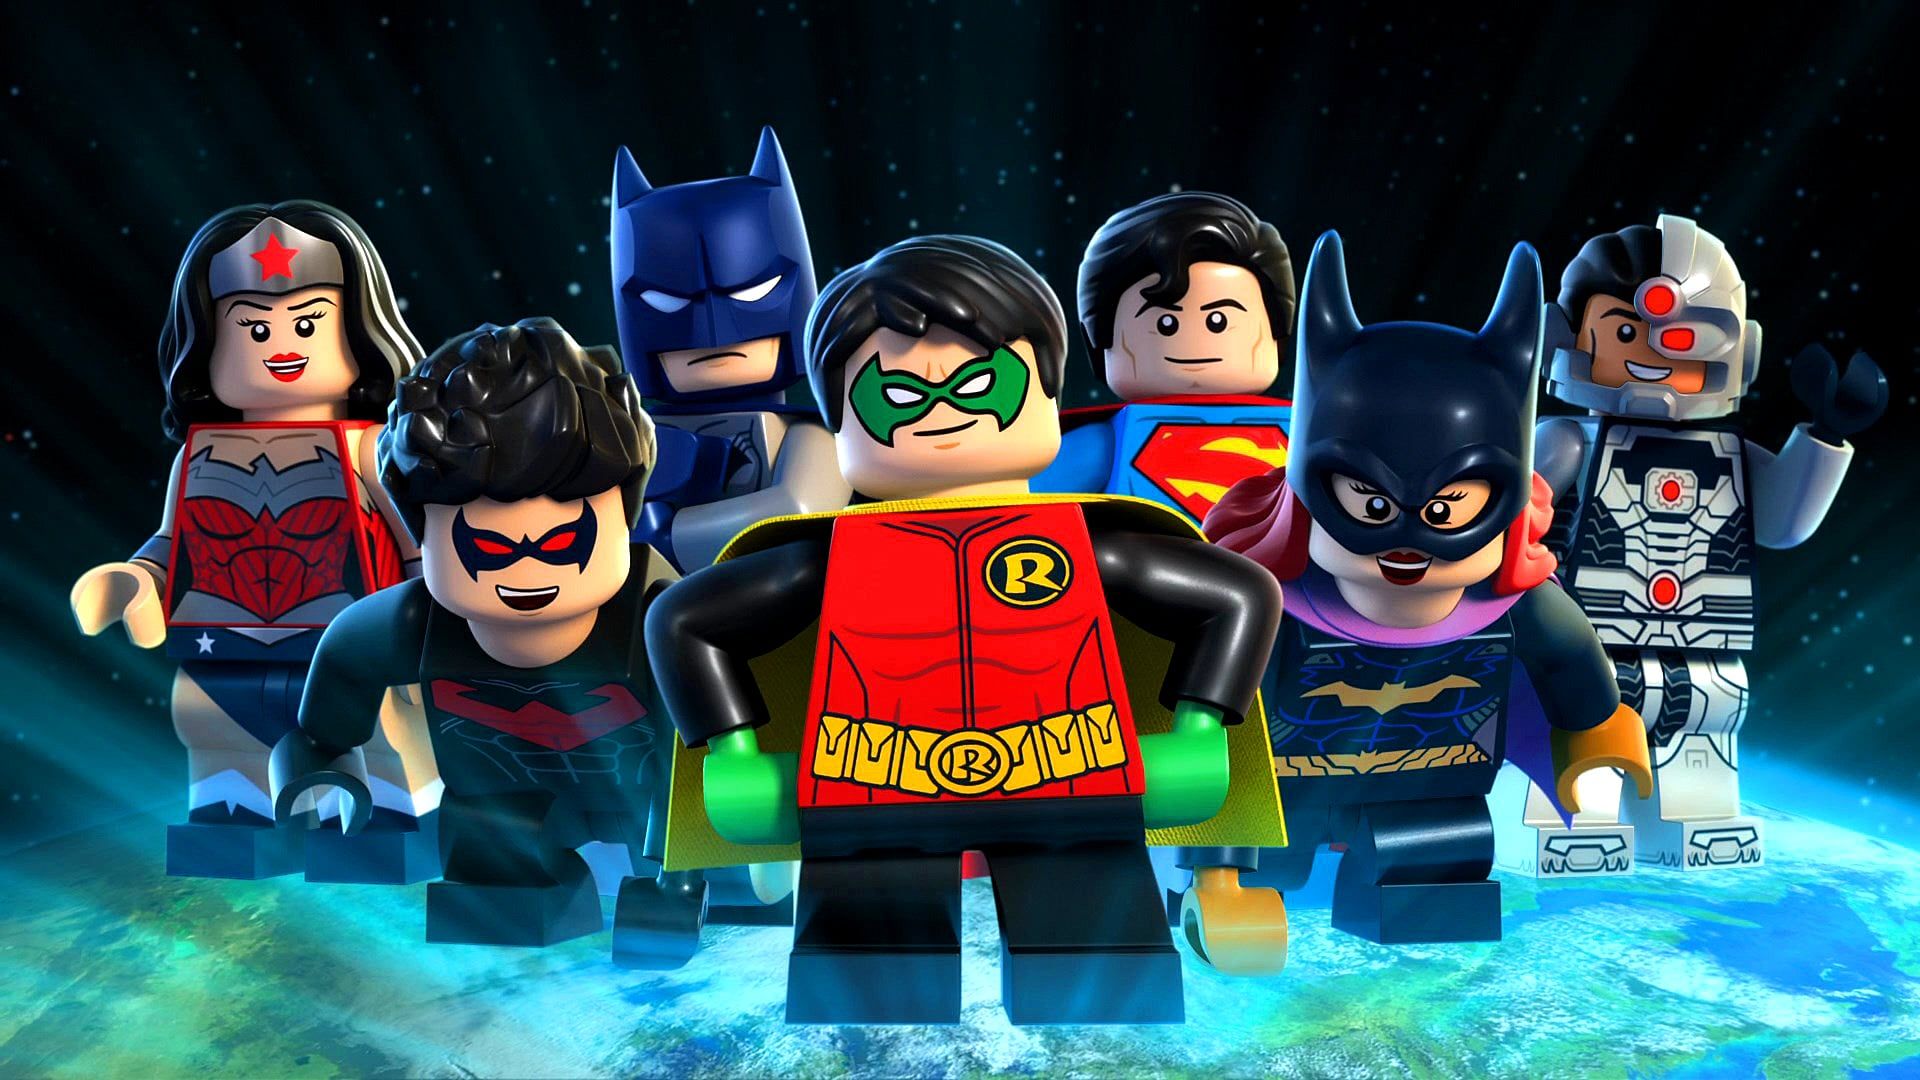 Lego DC Comics Superheroes: Justice League - Gotham City Breakout background